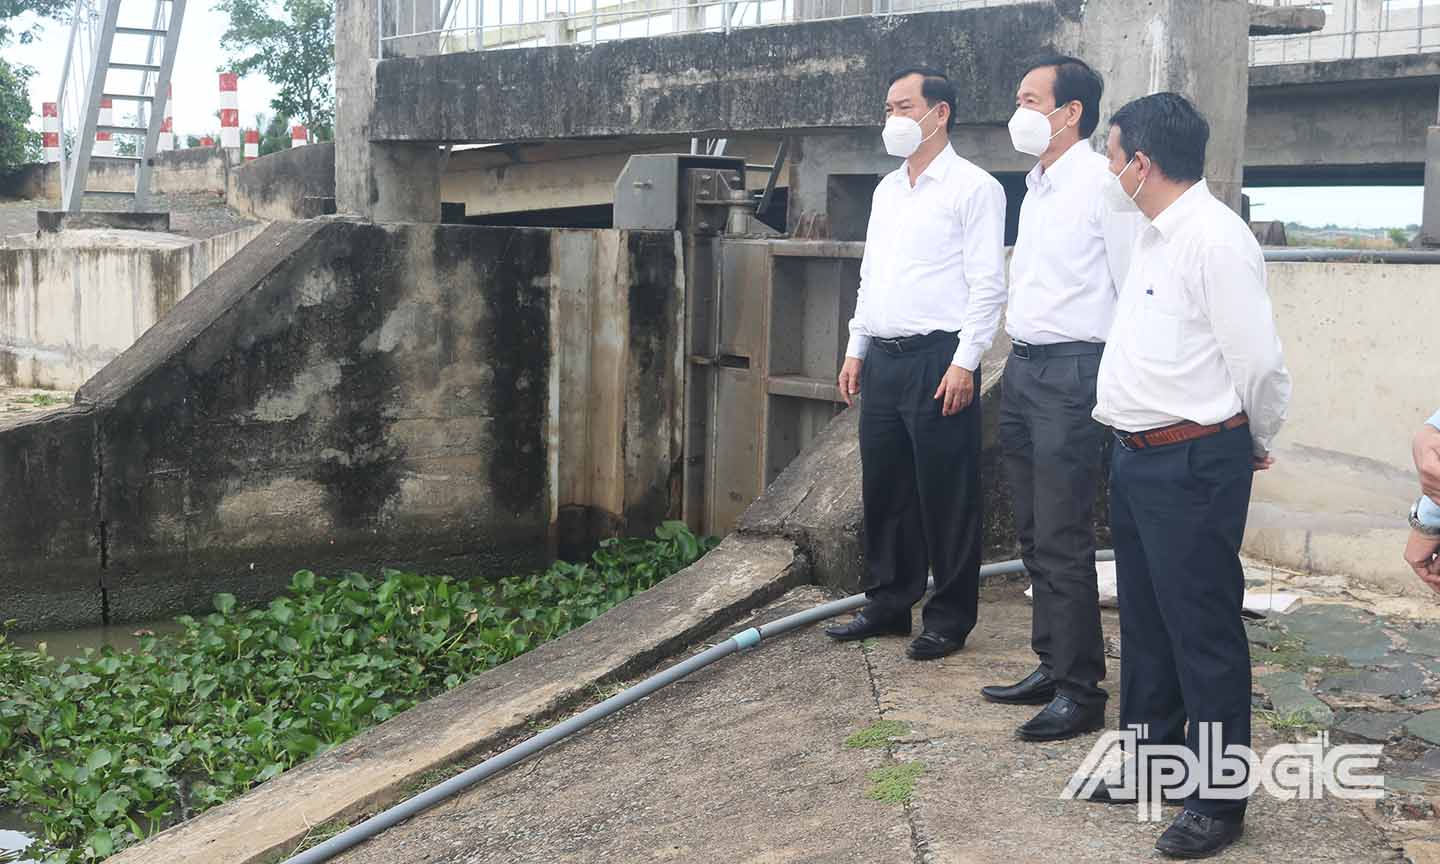 Đồng chí Nguyễn Văn Vĩnh kiểm tra dự án nạo vét kênh Hội Đồng Quyền (huyện Gò Công Đông).